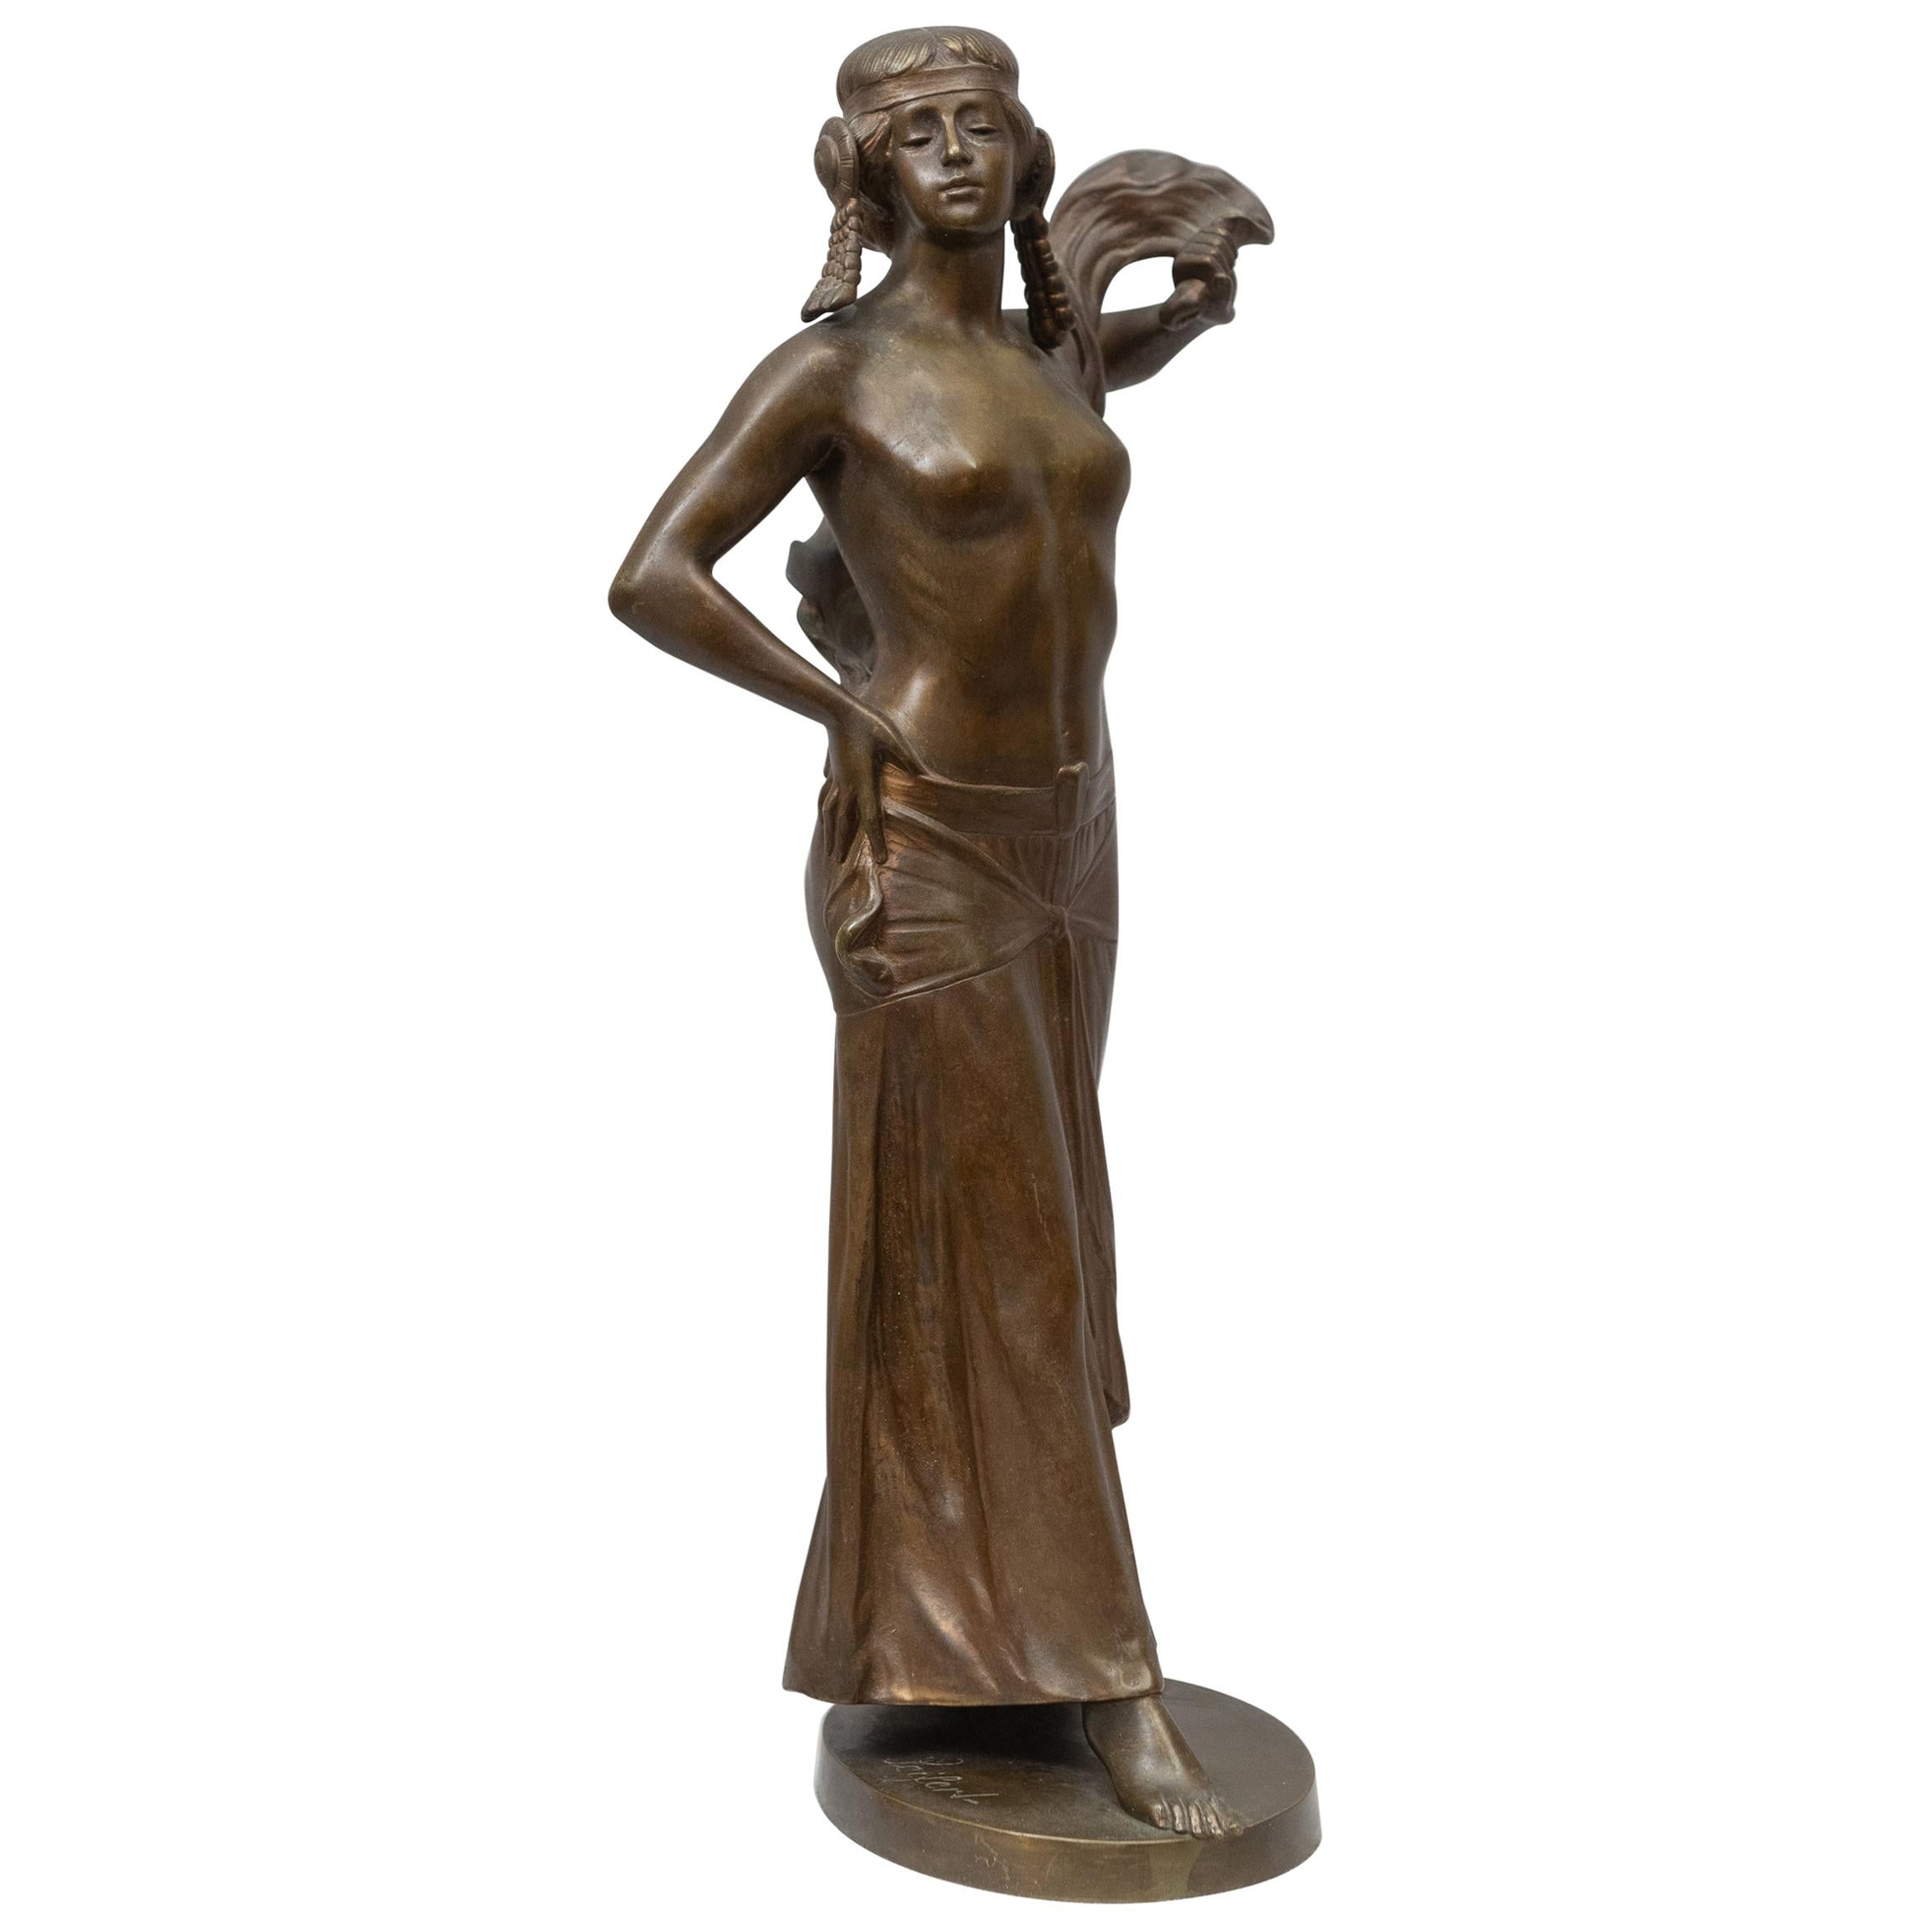 Bronze Figure of an Art Nouveau Maiden Artist Signed "Seifert" German circa 1900